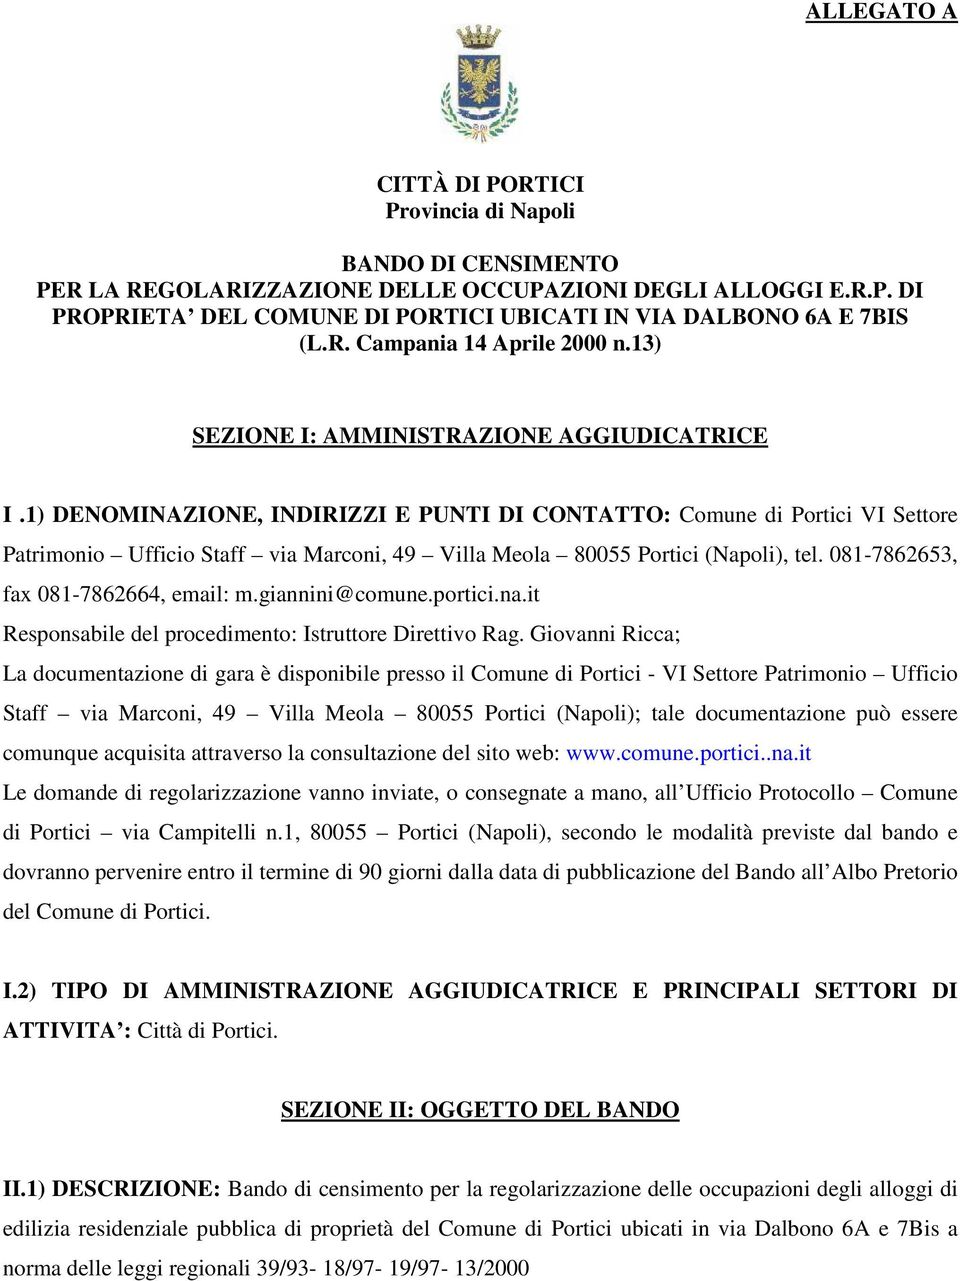 1) DENOMINAZIONE, INDIRIZZI E PUNTI DI CONTATTO: Comune di Portici VI Settore Patrimonio Ufficio Staff via Marconi, 49 Villa Meola 80055 Portici (Napoli), tel. 081-7862653, fax 081-7862664, email: m.